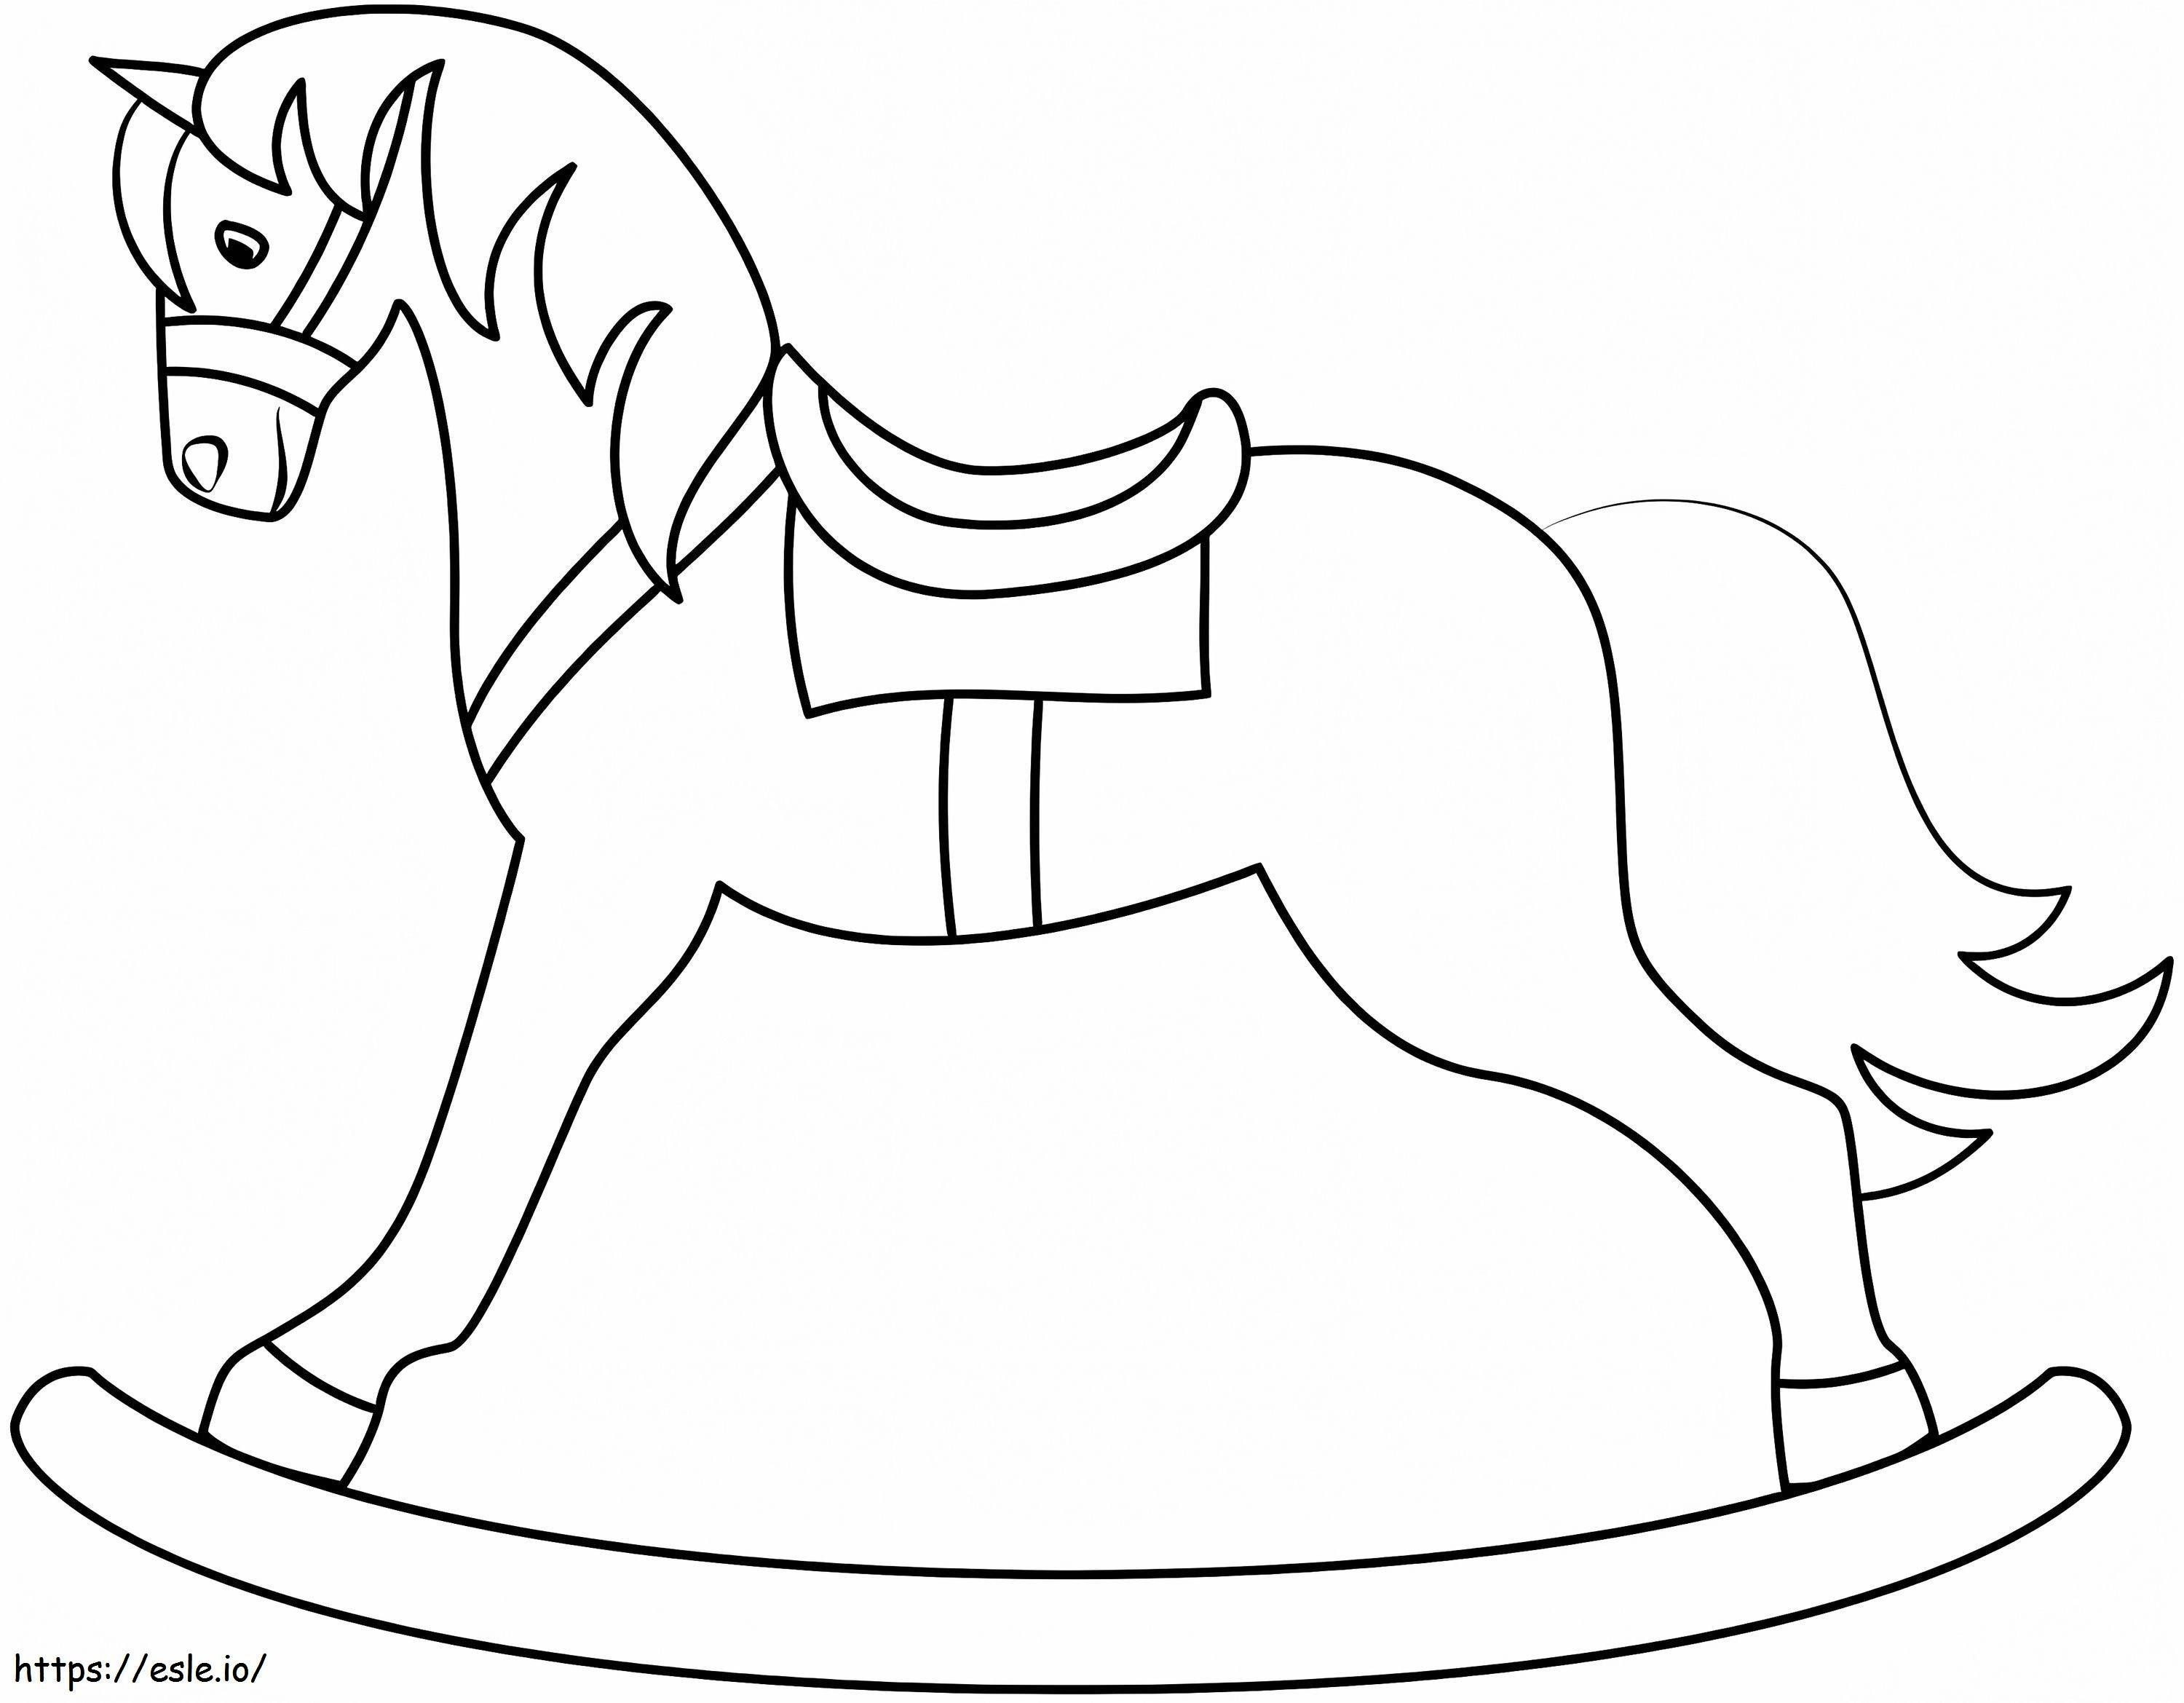 Cavalo de balanço grátis para colorir